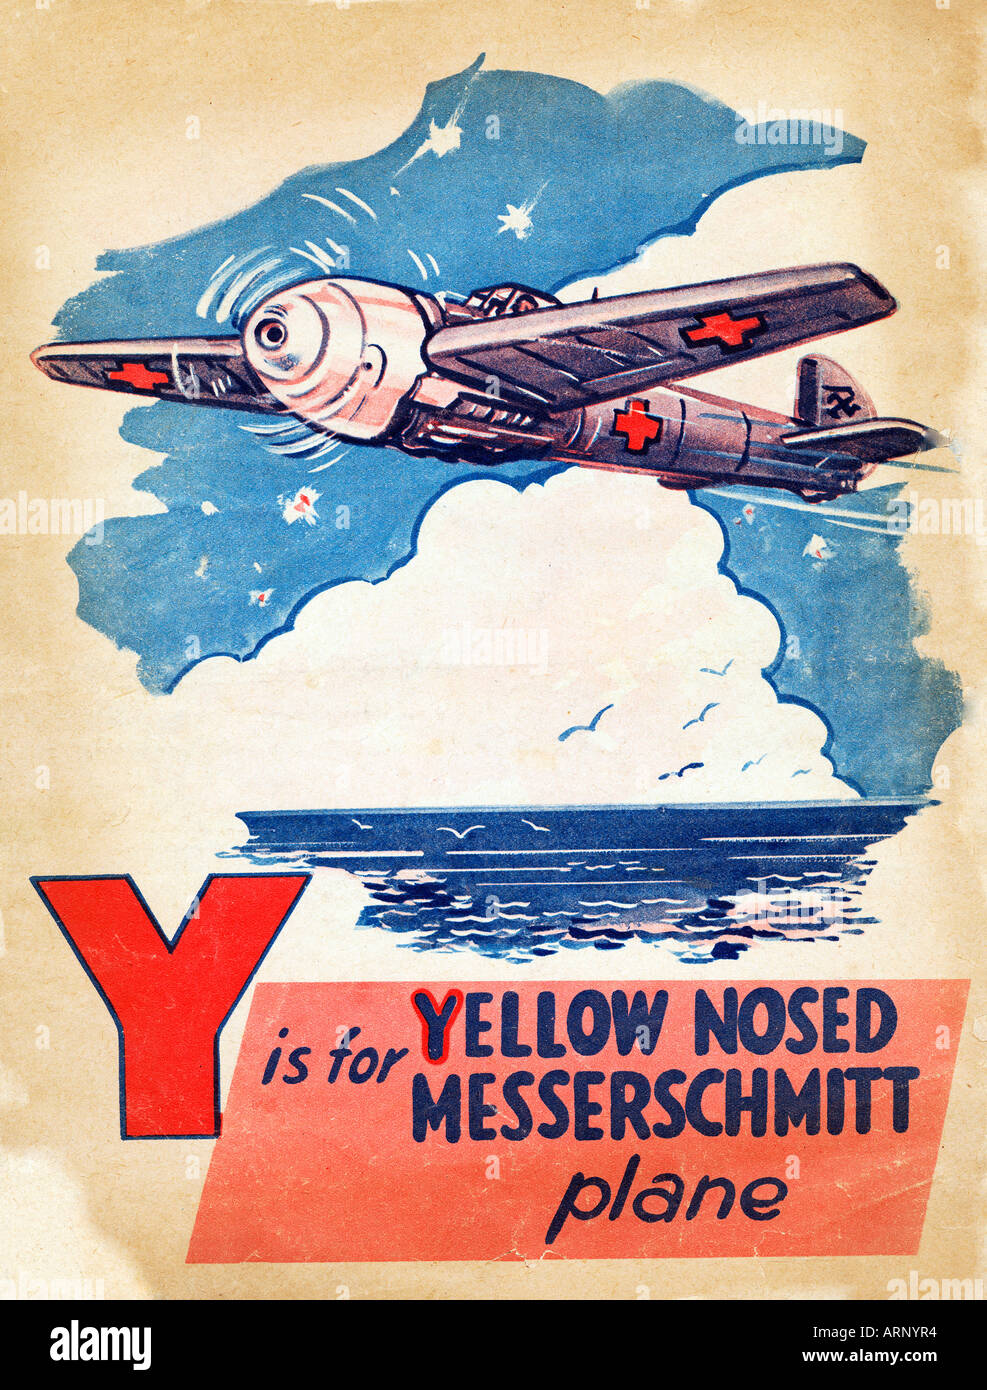 Battle of Britain Y ist für gelbe Zahnwale Messerschmitt britischen Alphabet Kinderbuch von WW II Stockfoto